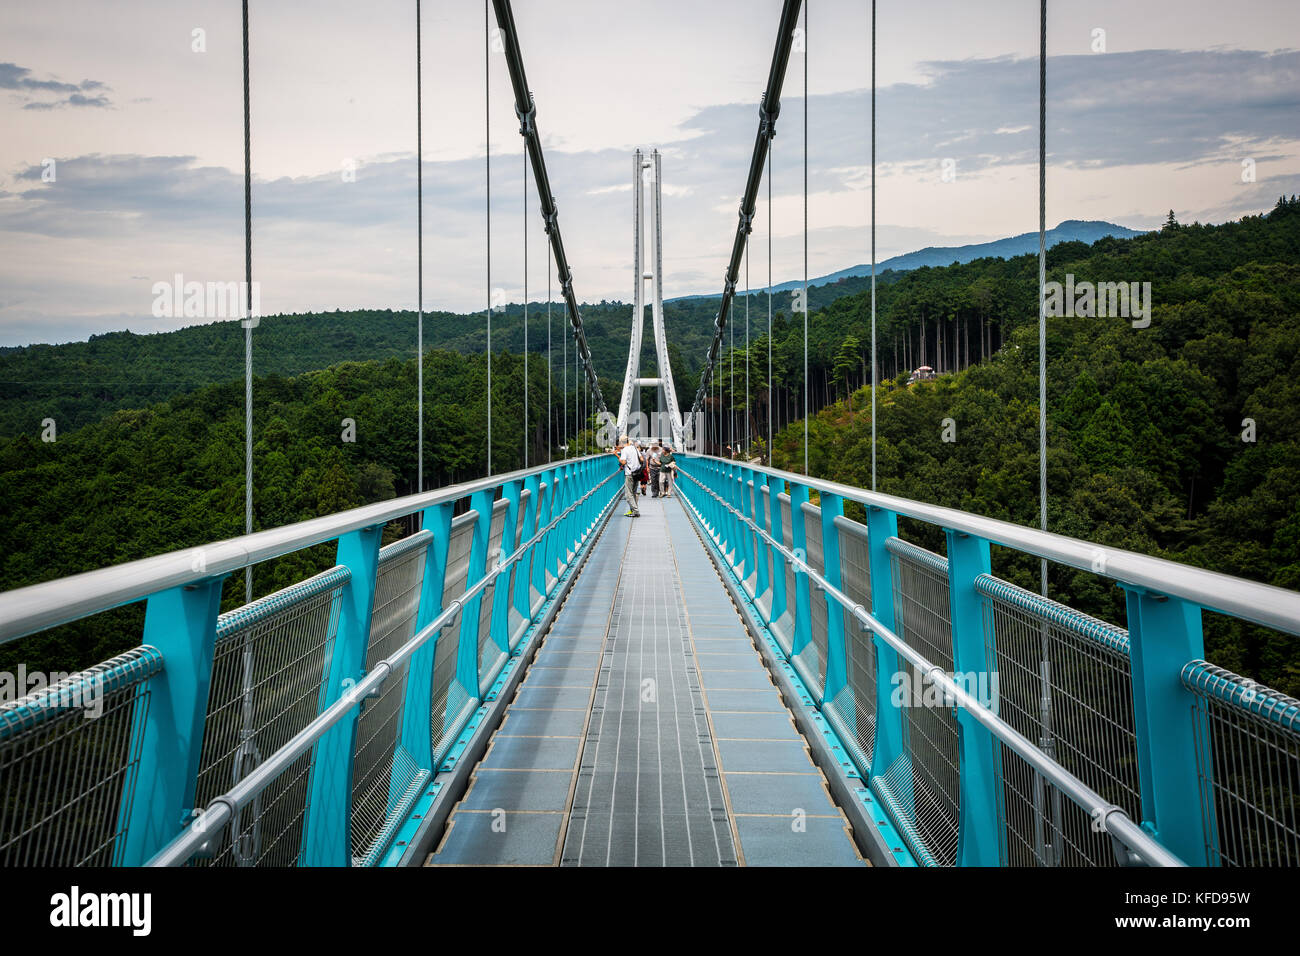 Die längste Fußgänger-Hängebrücke in Japan mit einer Länge von 400 m. herrlichem Blick auf Mt. Fuji und Suruga Bay genießen können Stockfoto